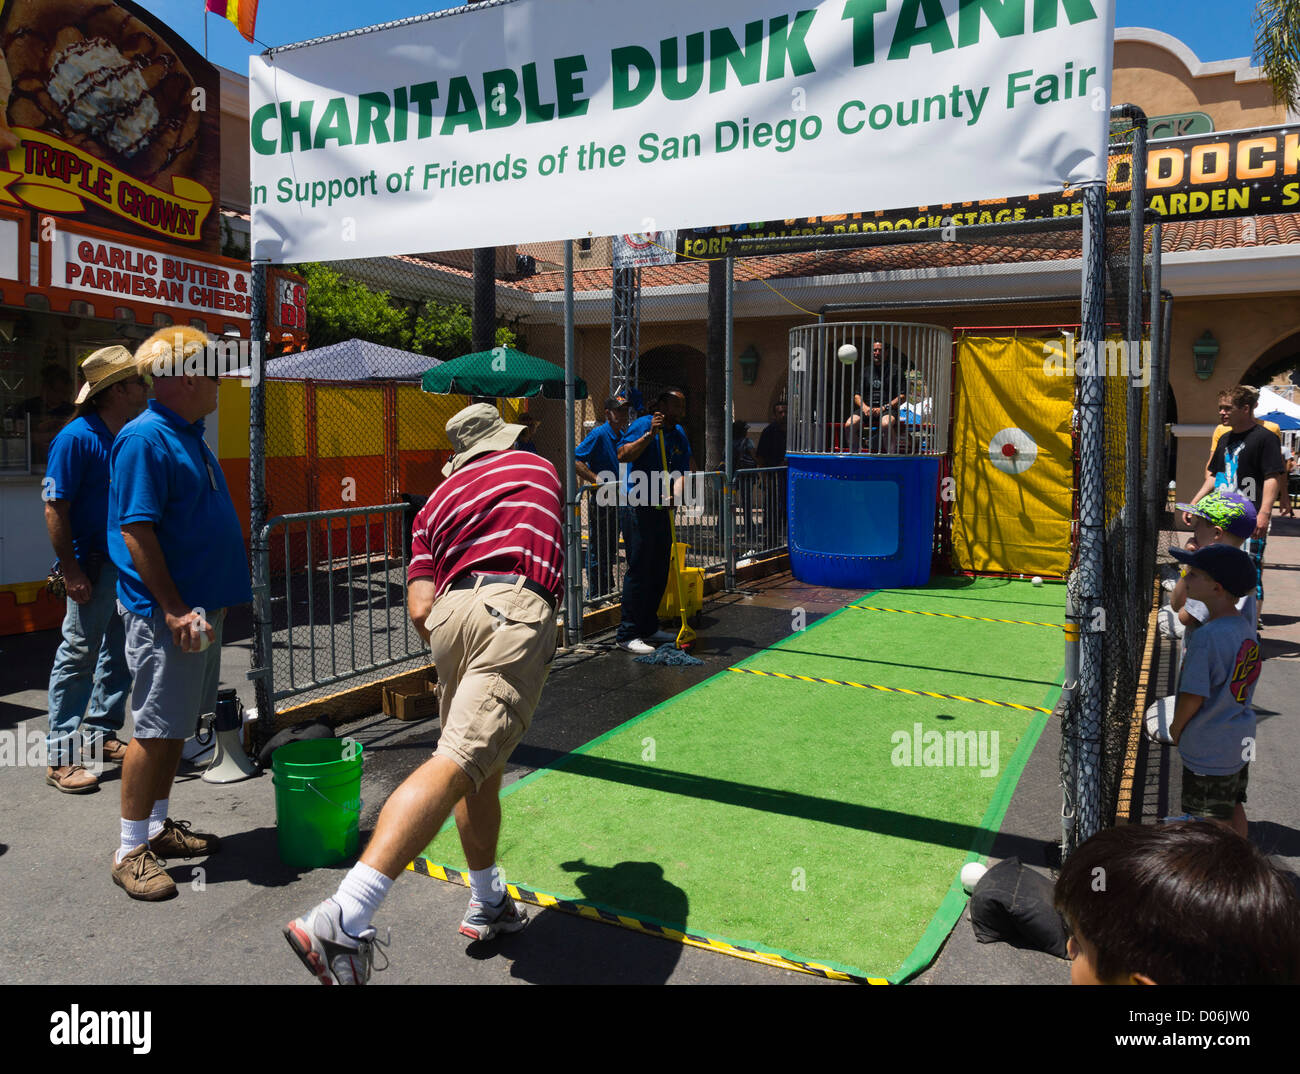 San Diego County Fair, Kalifornien - Nächstenliebe Dunk Tank. Stockfoto